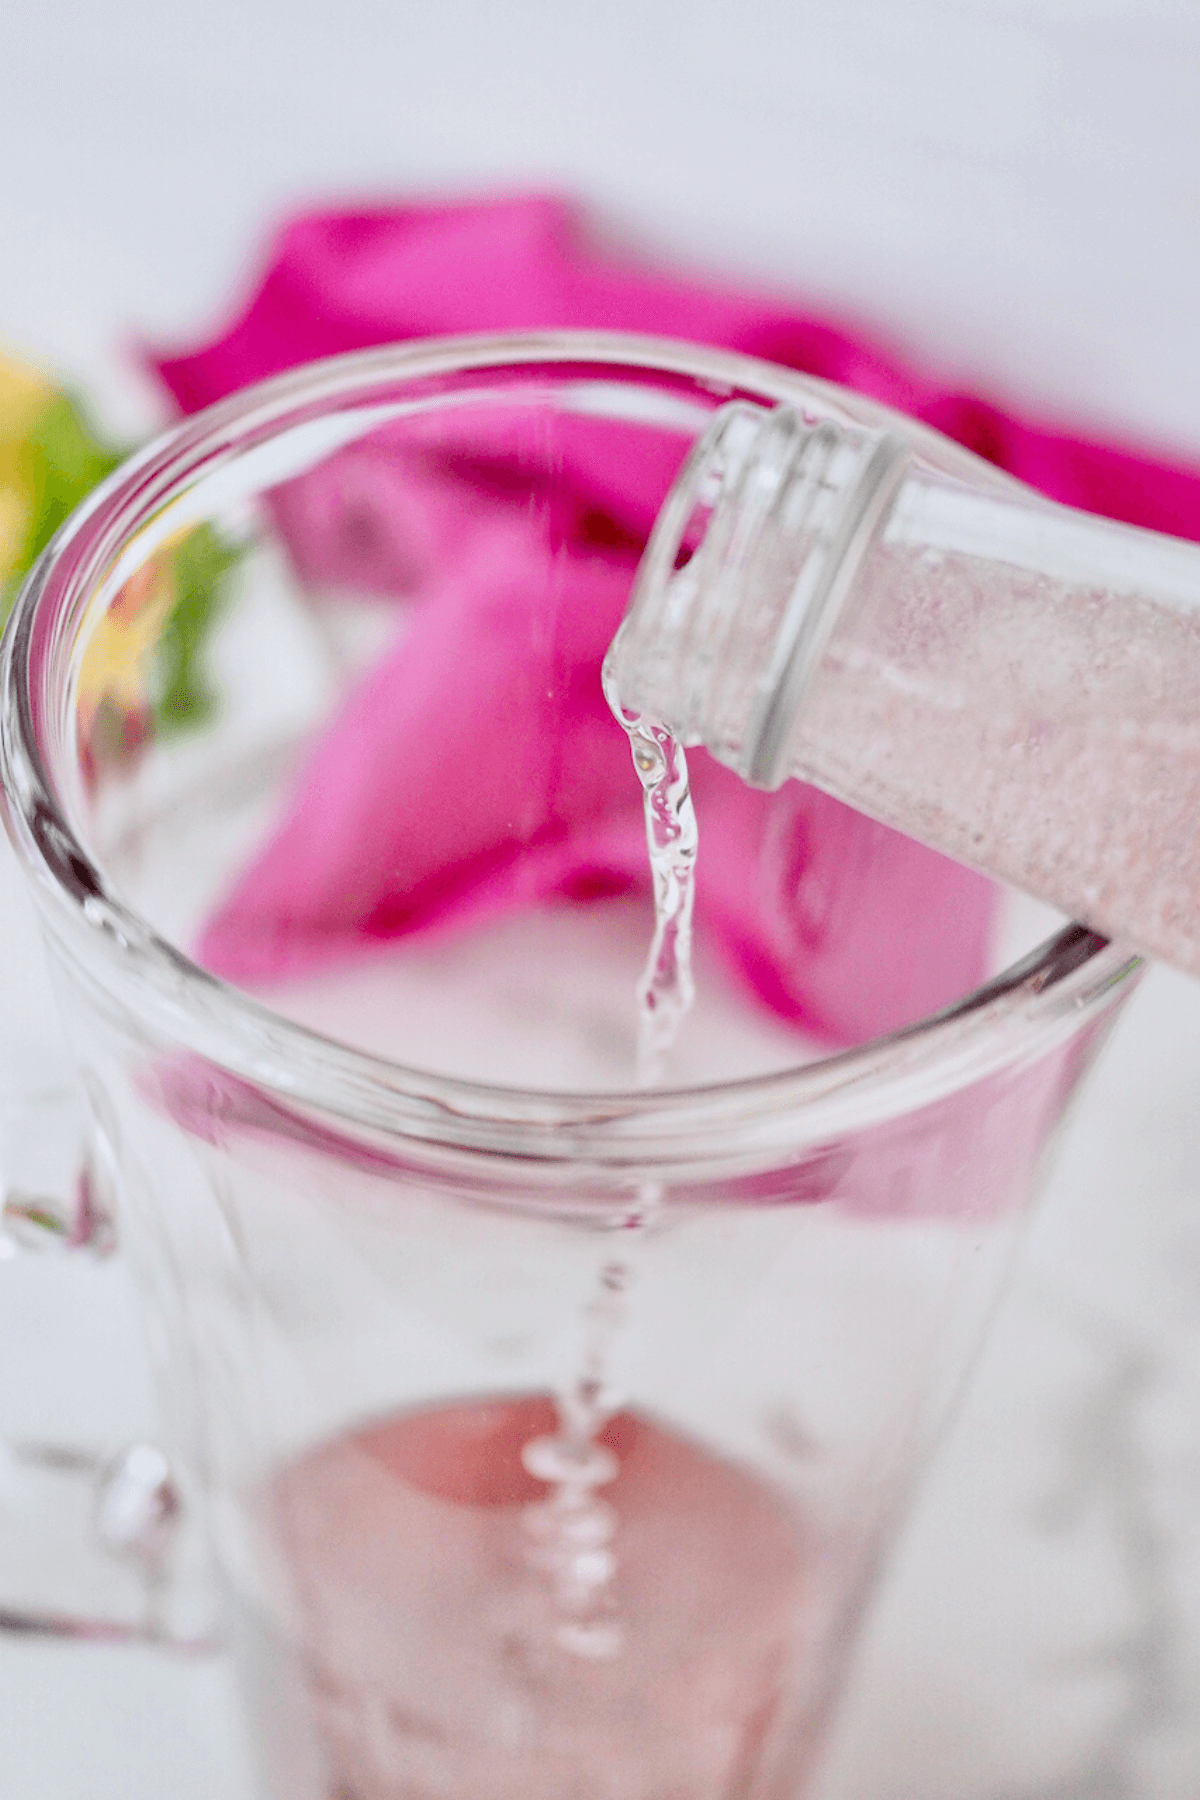 Pour sparkling beverage over other juices for pink lemonade vodka punch. 